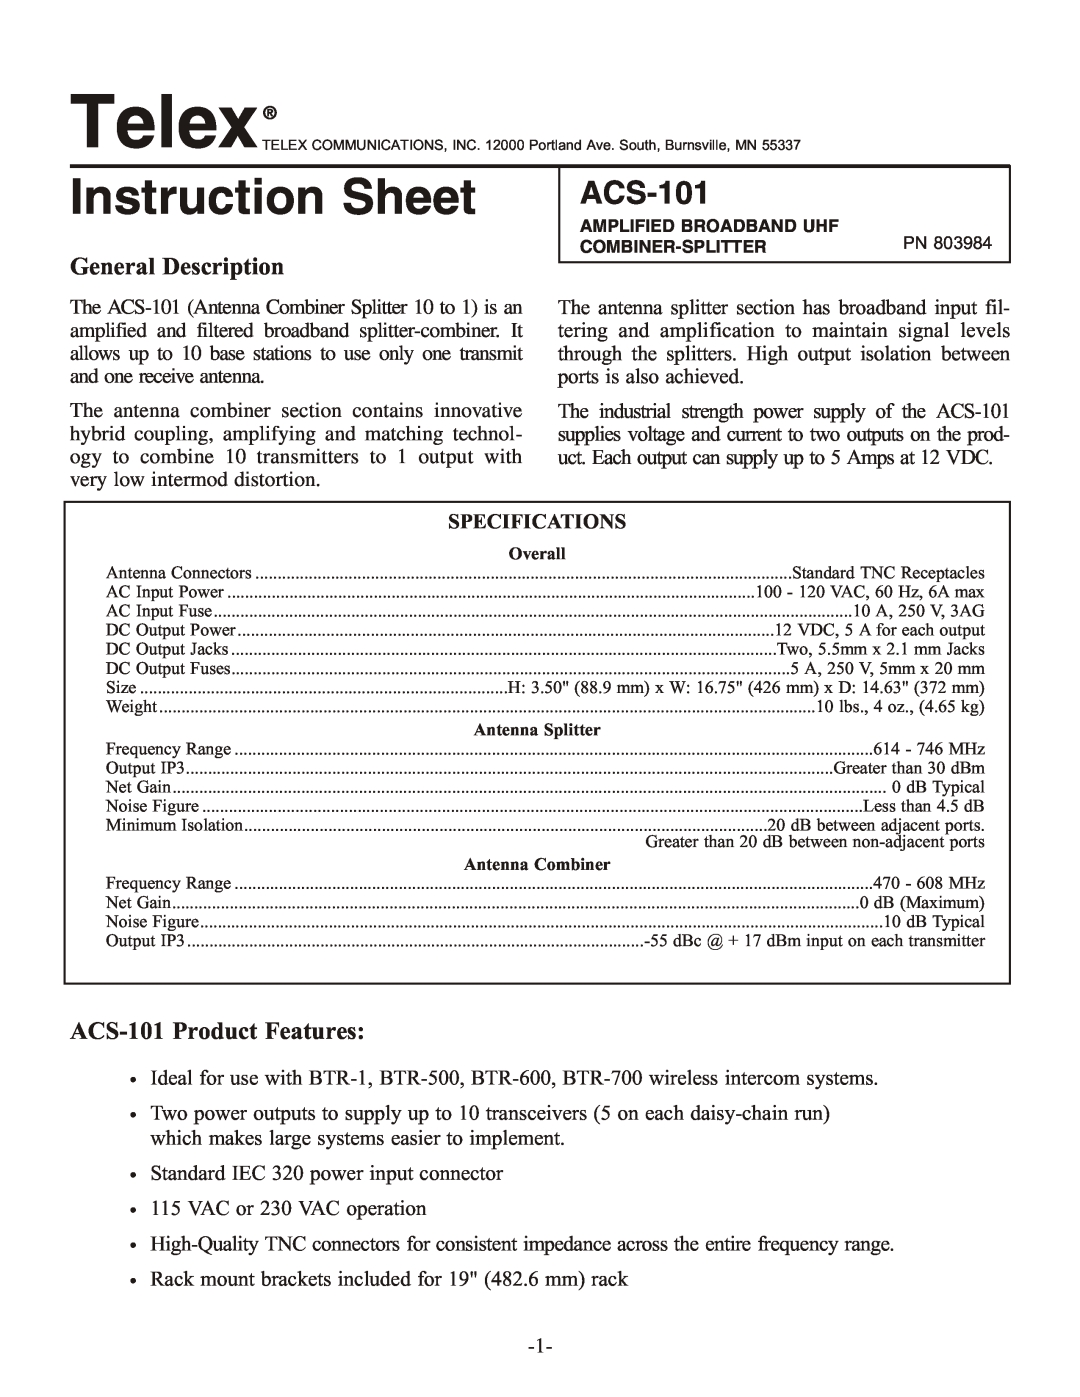 Telex instruction sheet General Description, ACS-101 Product Features, Instruction Sheet 